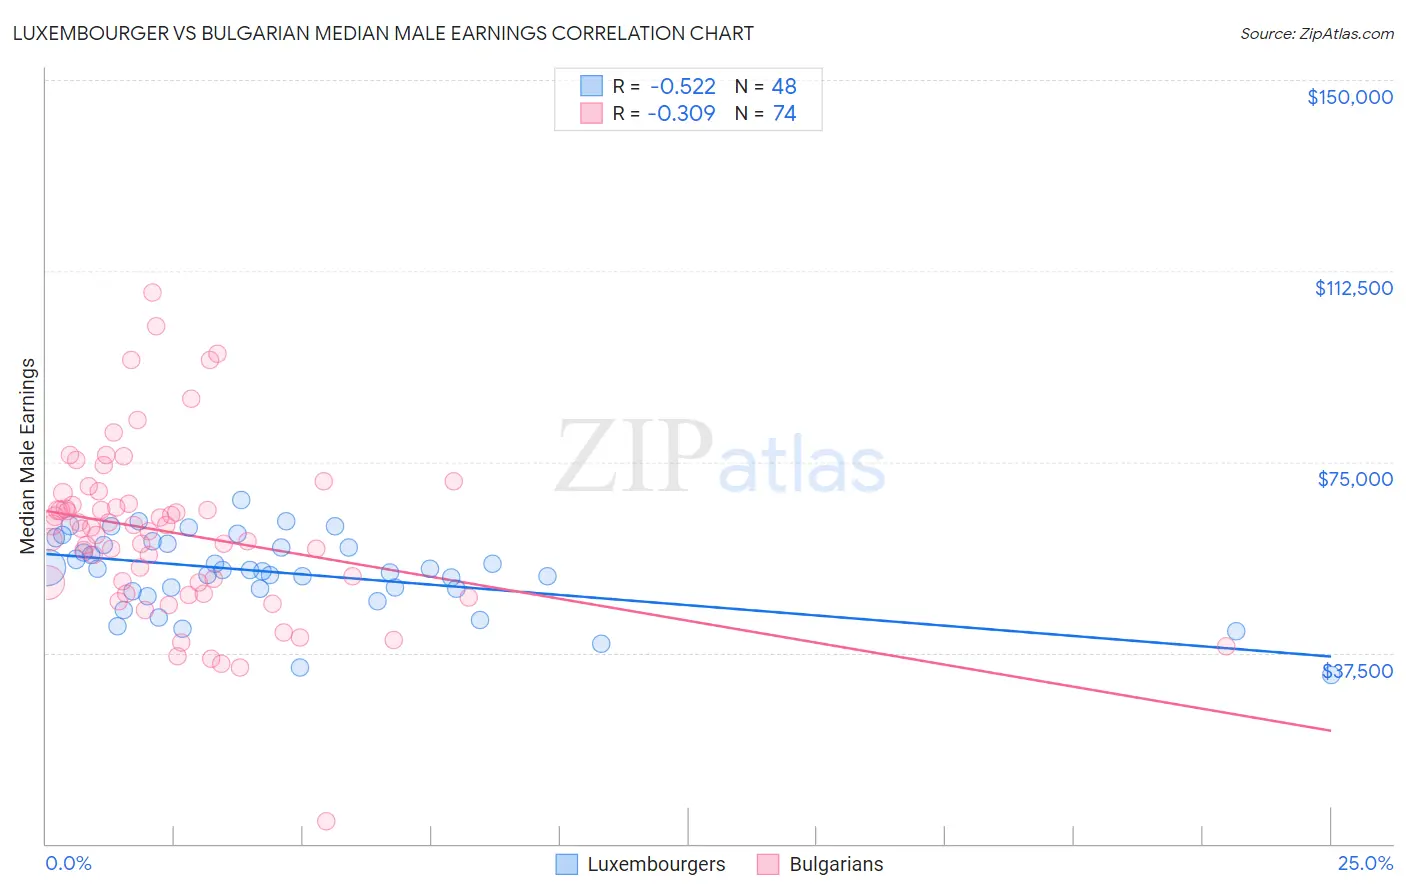 Luxembourger vs Bulgarian Median Male Earnings